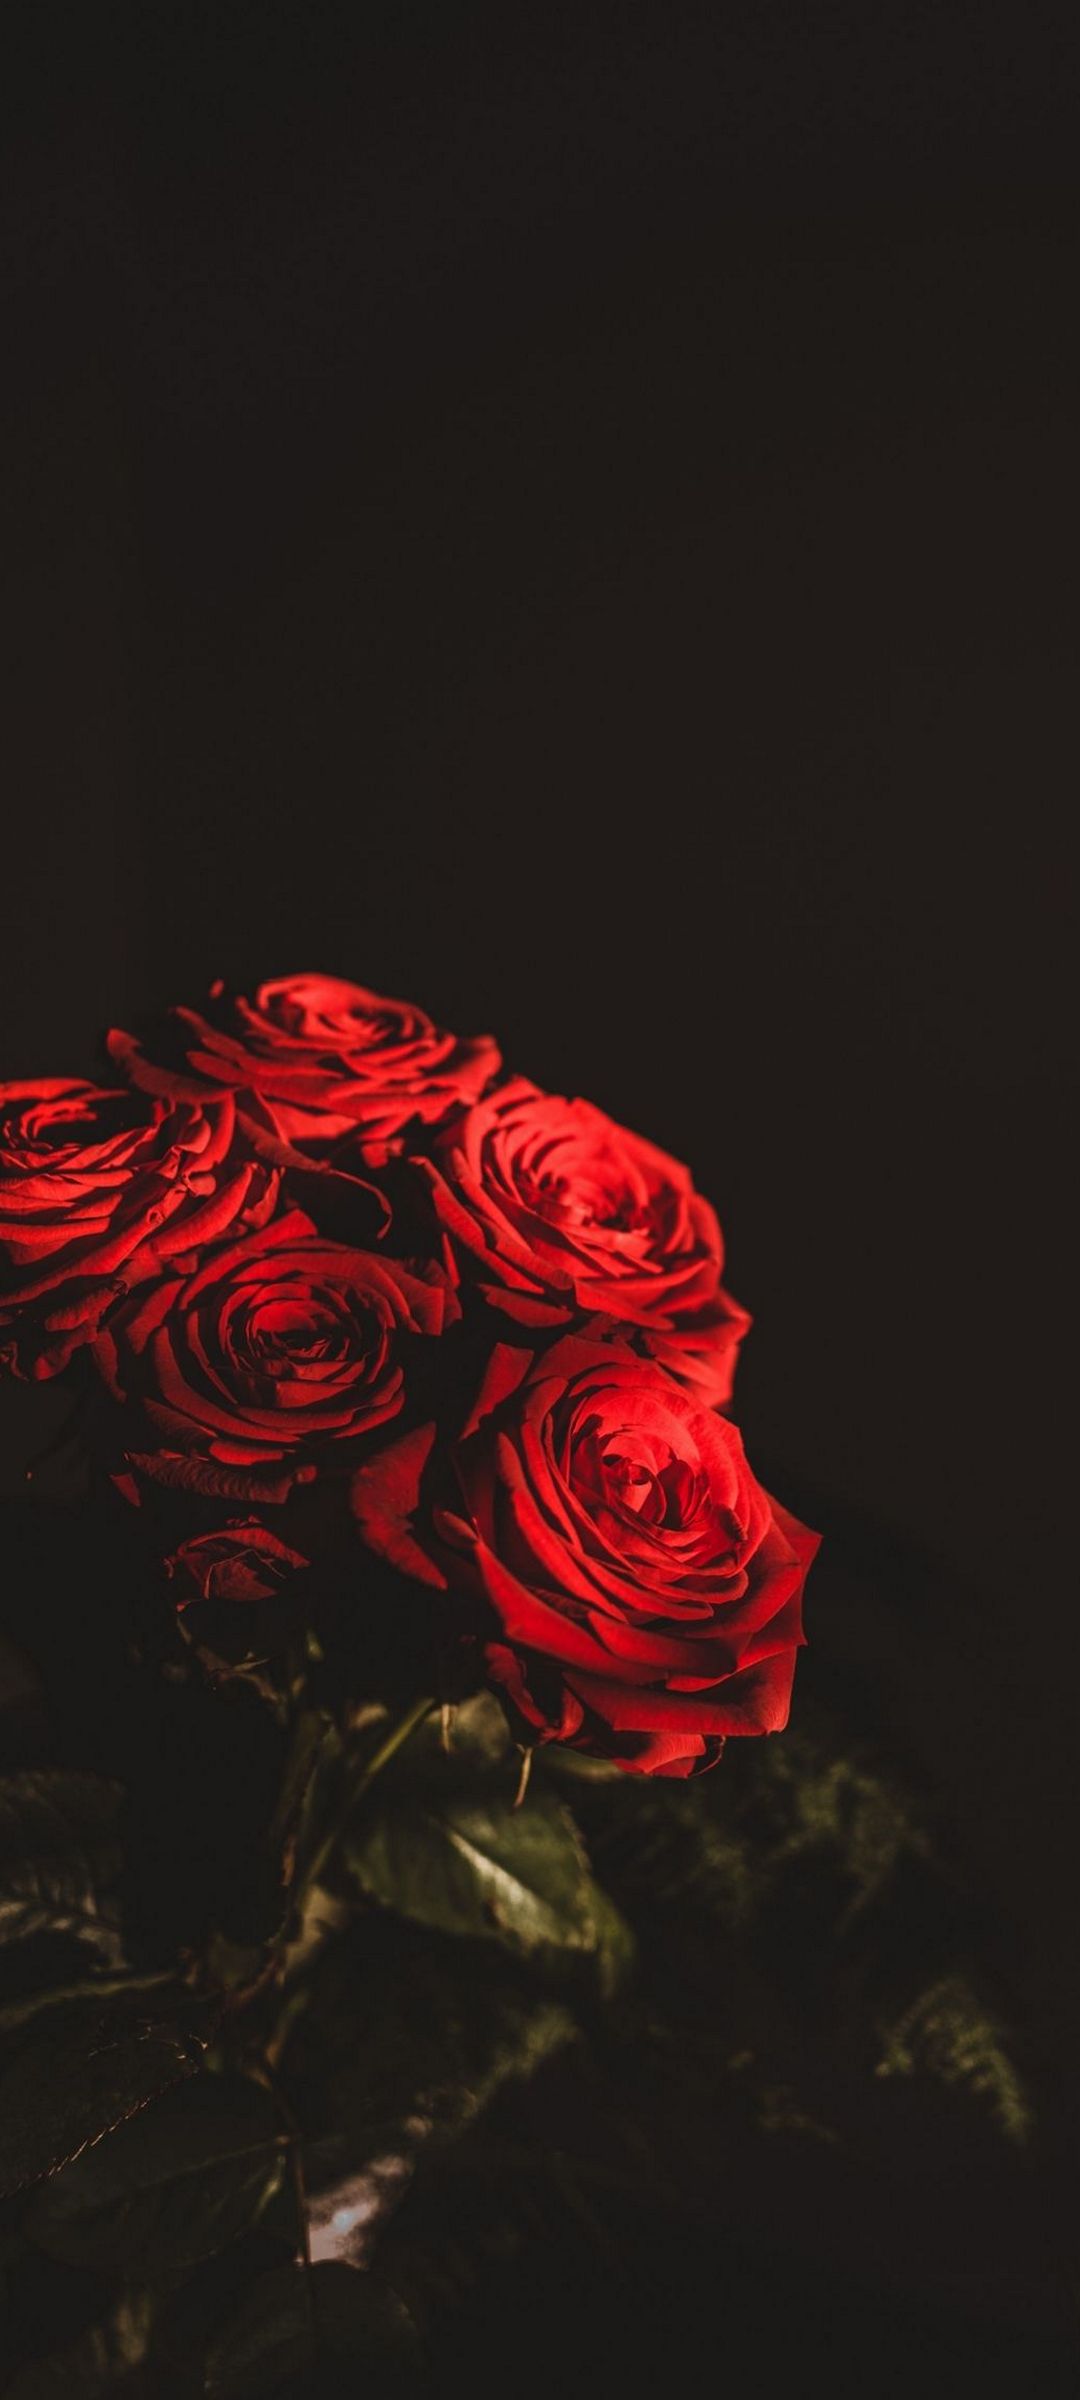 綺麗な赤い薔薇の束 Oppo Reno5 A 壁紙 待ち受け スマラン